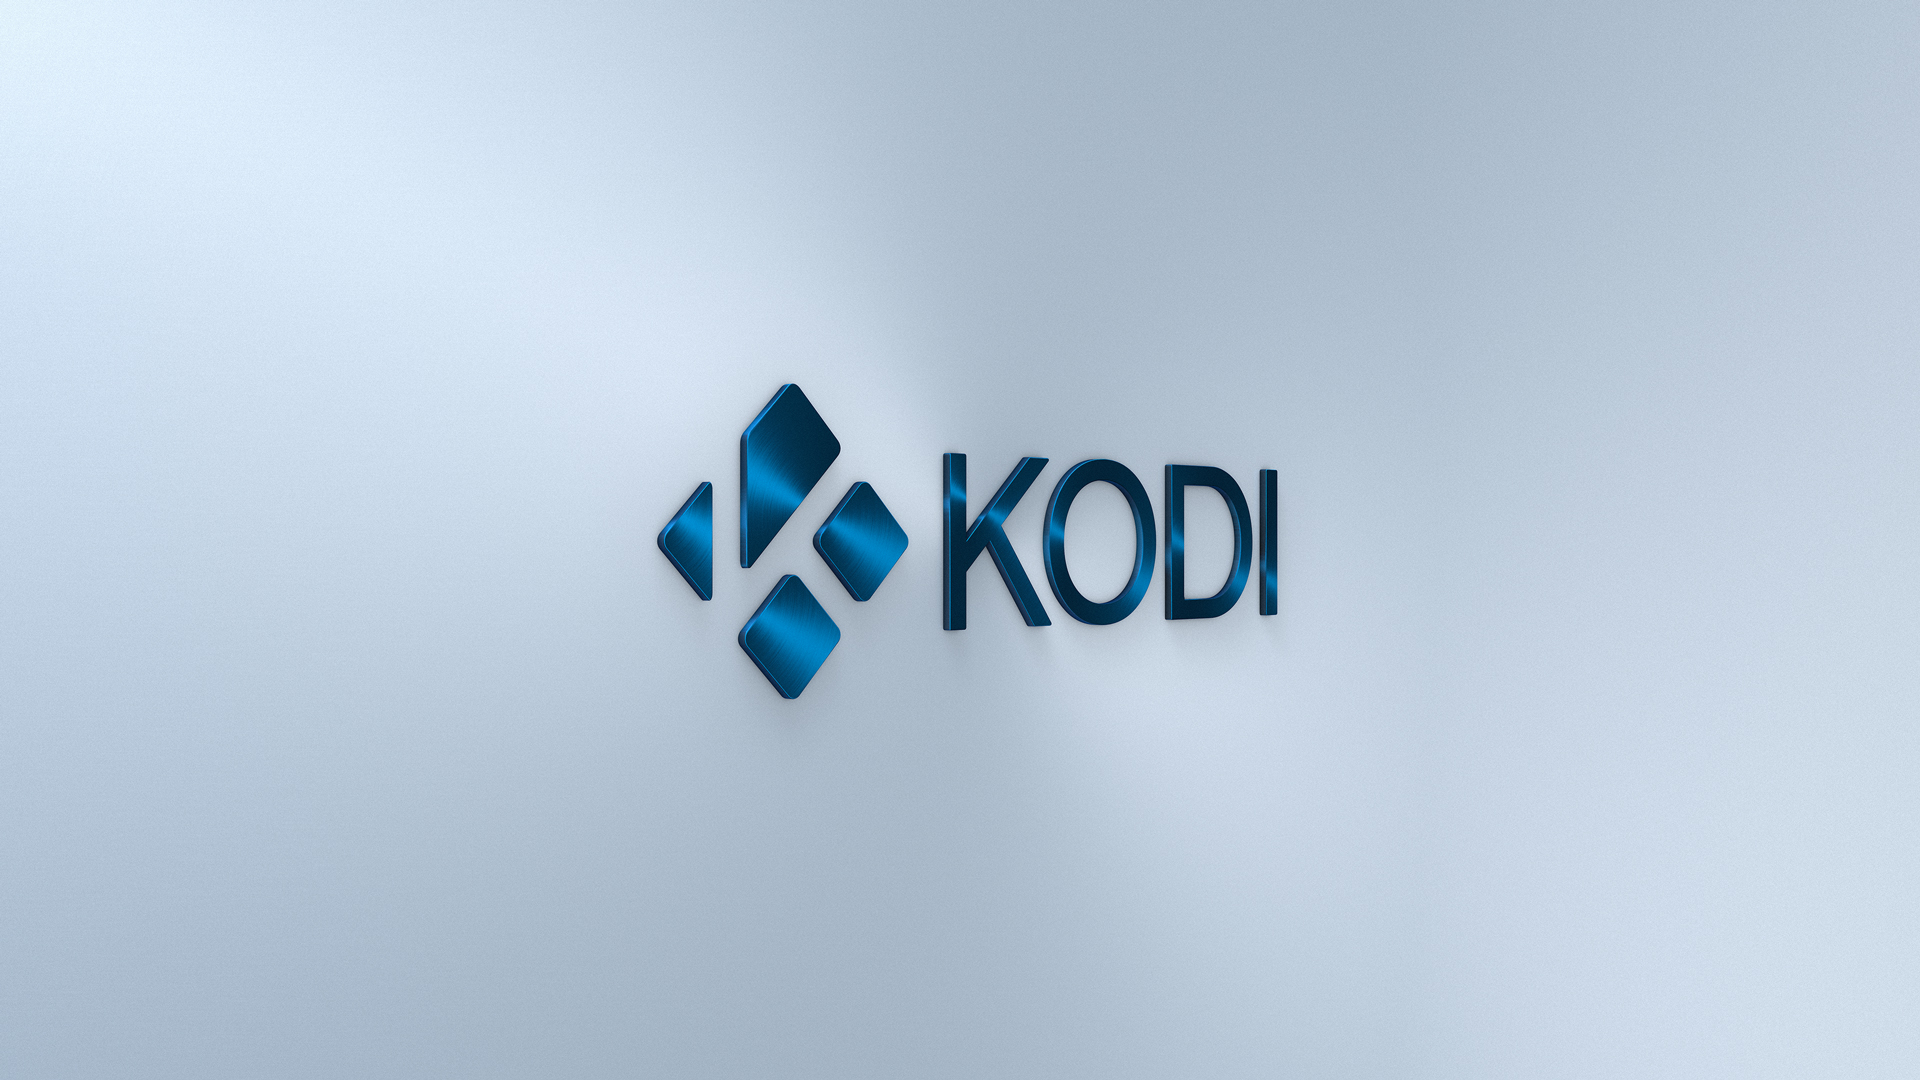 Kodi-Wallpaper-15C-1080p samfisher.jpg